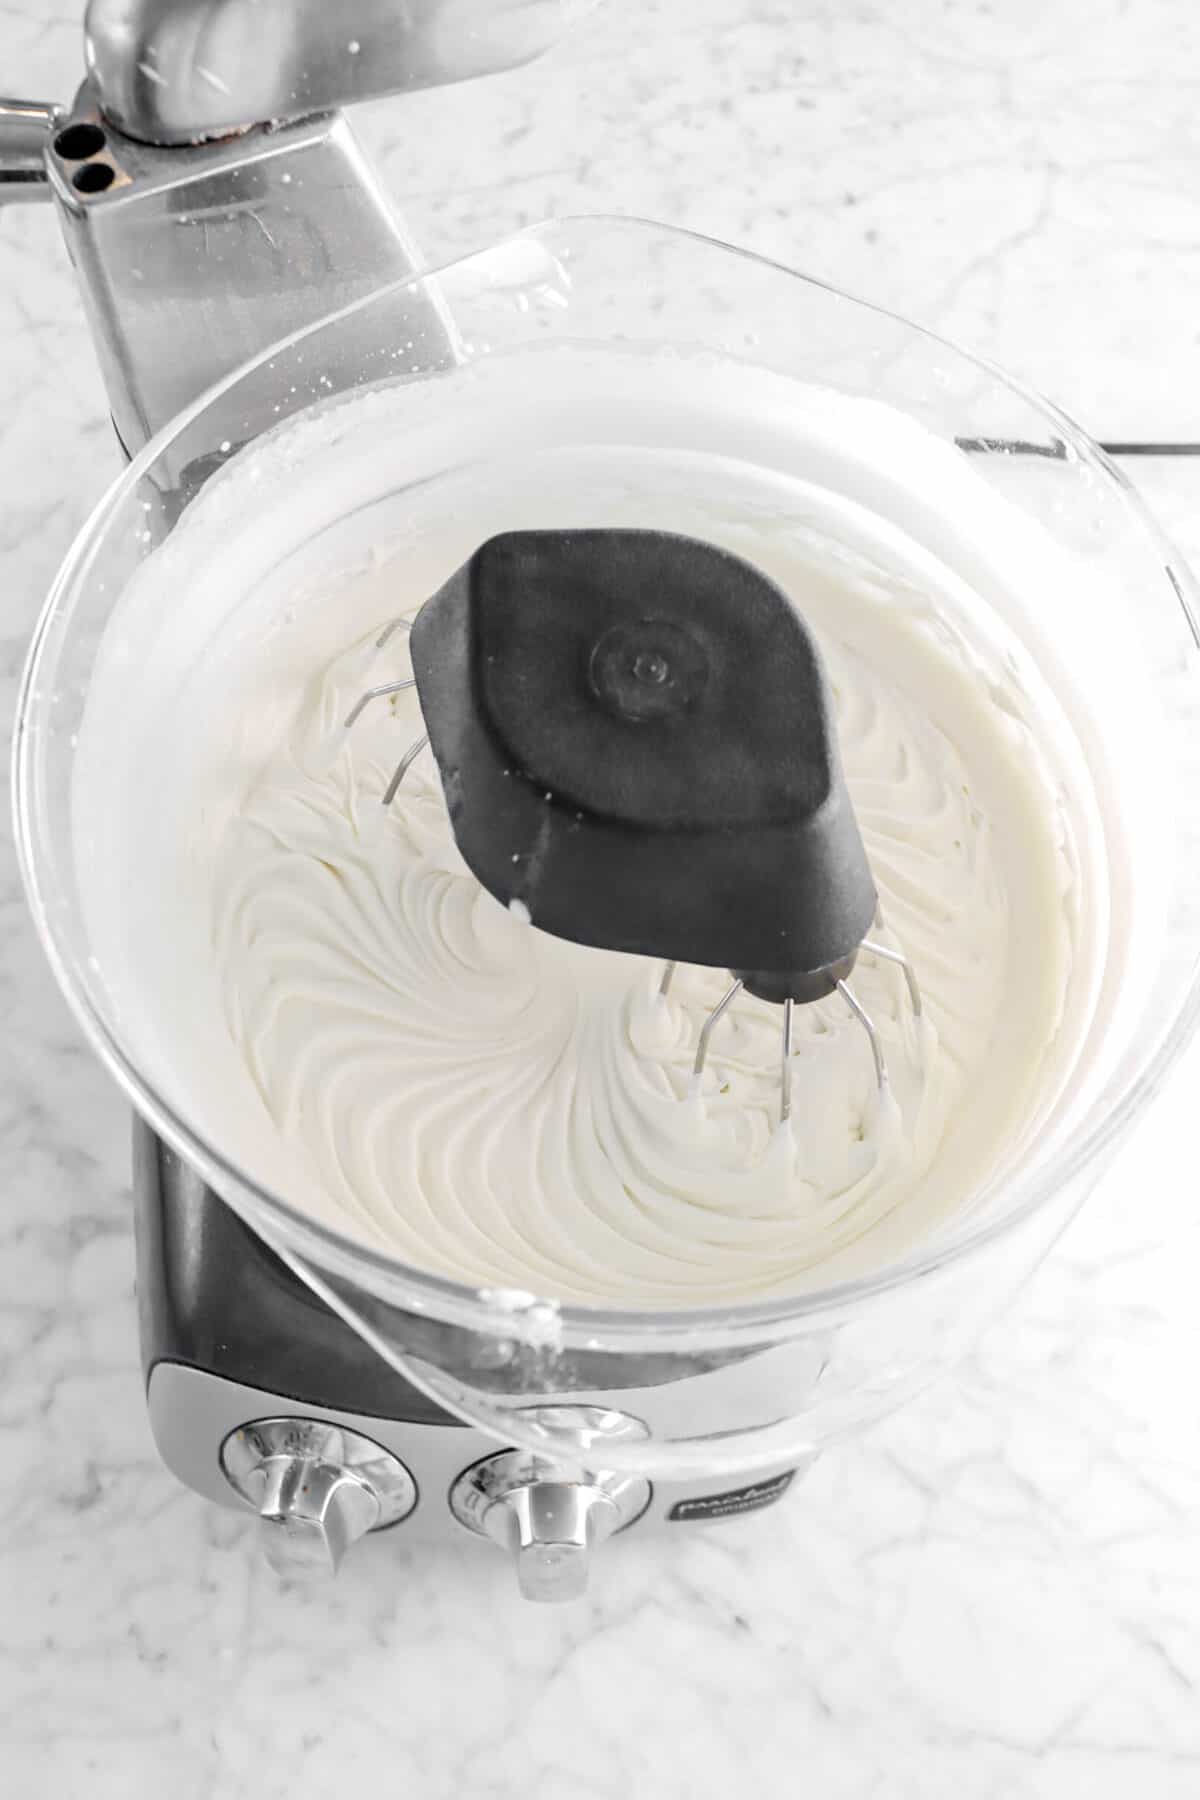 chantilly cream in mixer